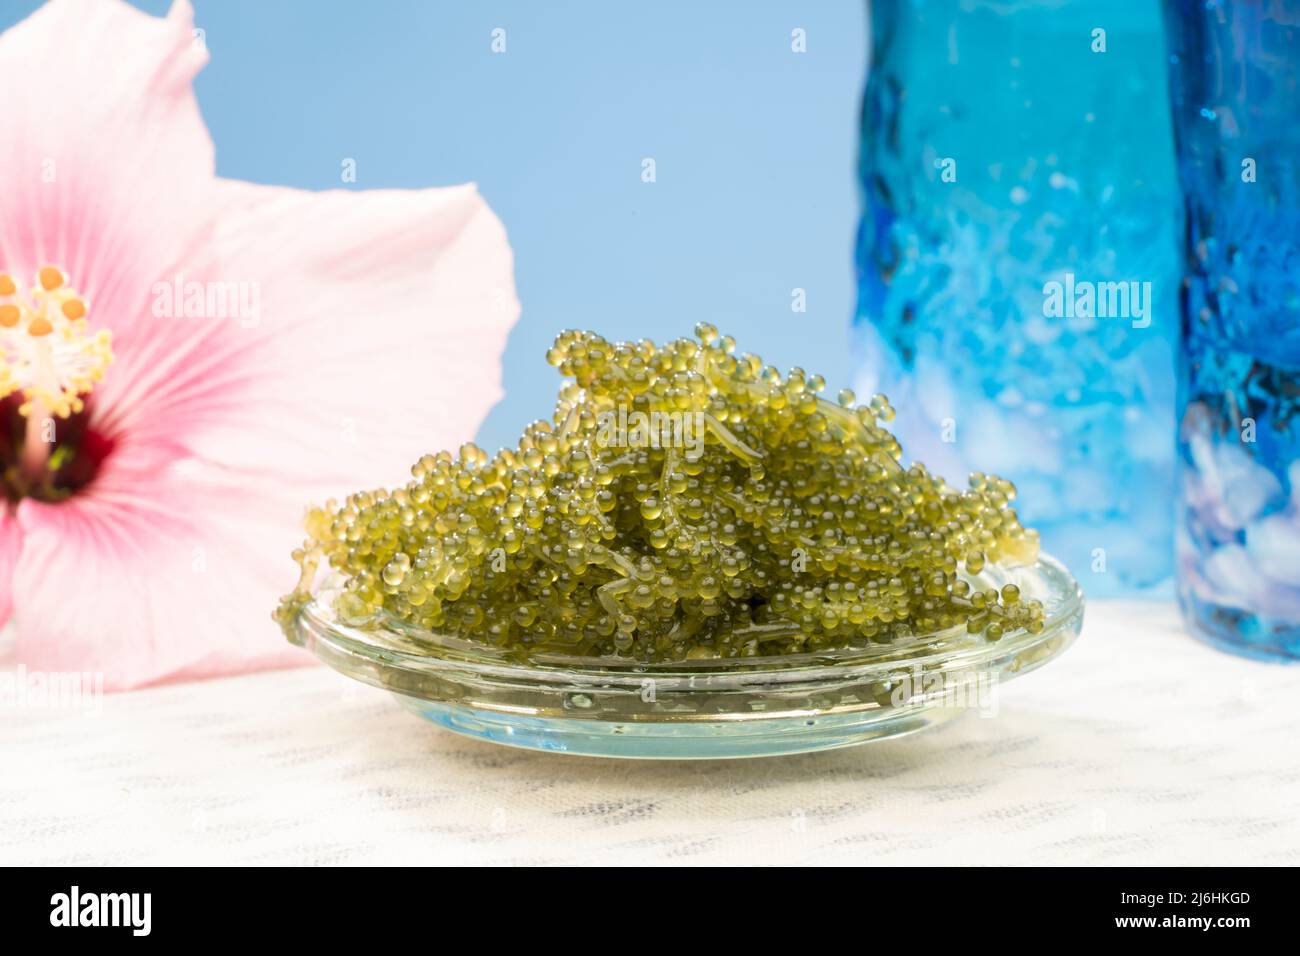 Umibudou oder Seegras eine beliebte Algen / Algen in Okinawa, Japan gegessen und bekannt für seine puchi puchi knallende Sensation. Stockfoto